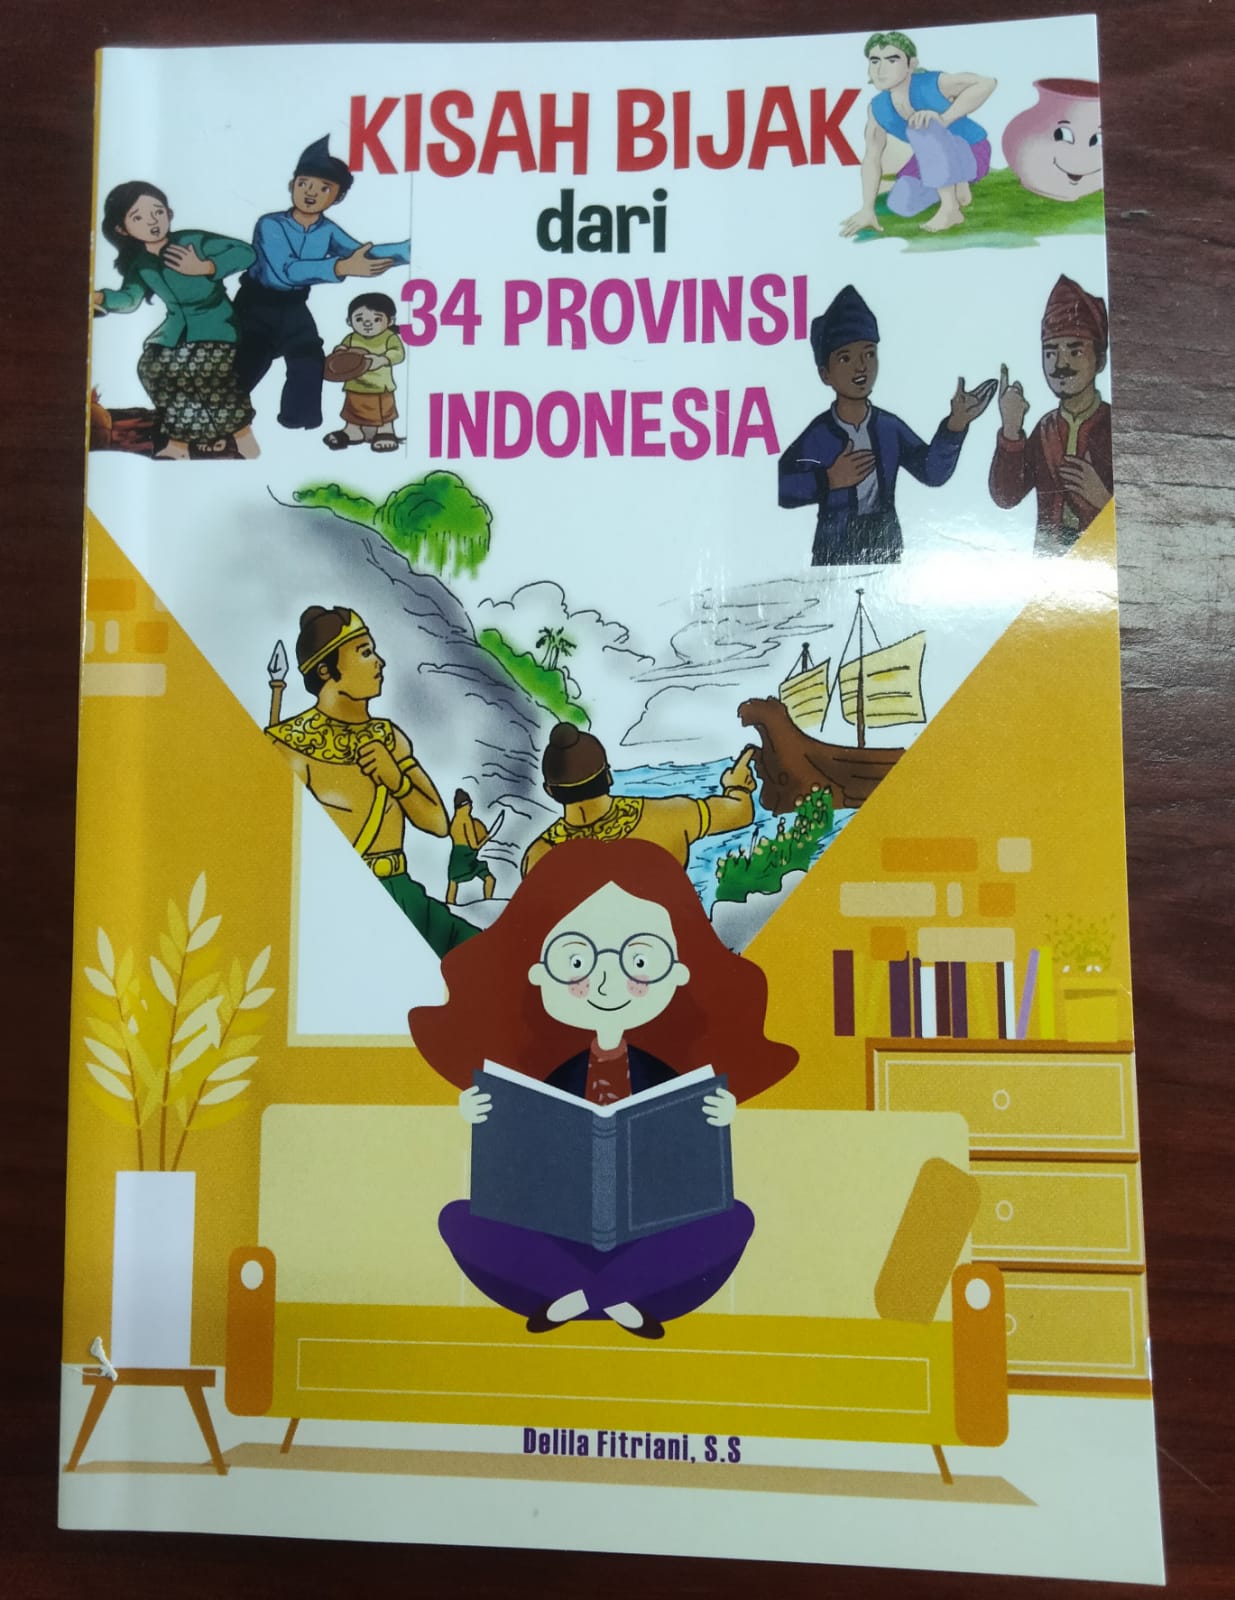 Kisah bijak dari 34 provinsi indonesia